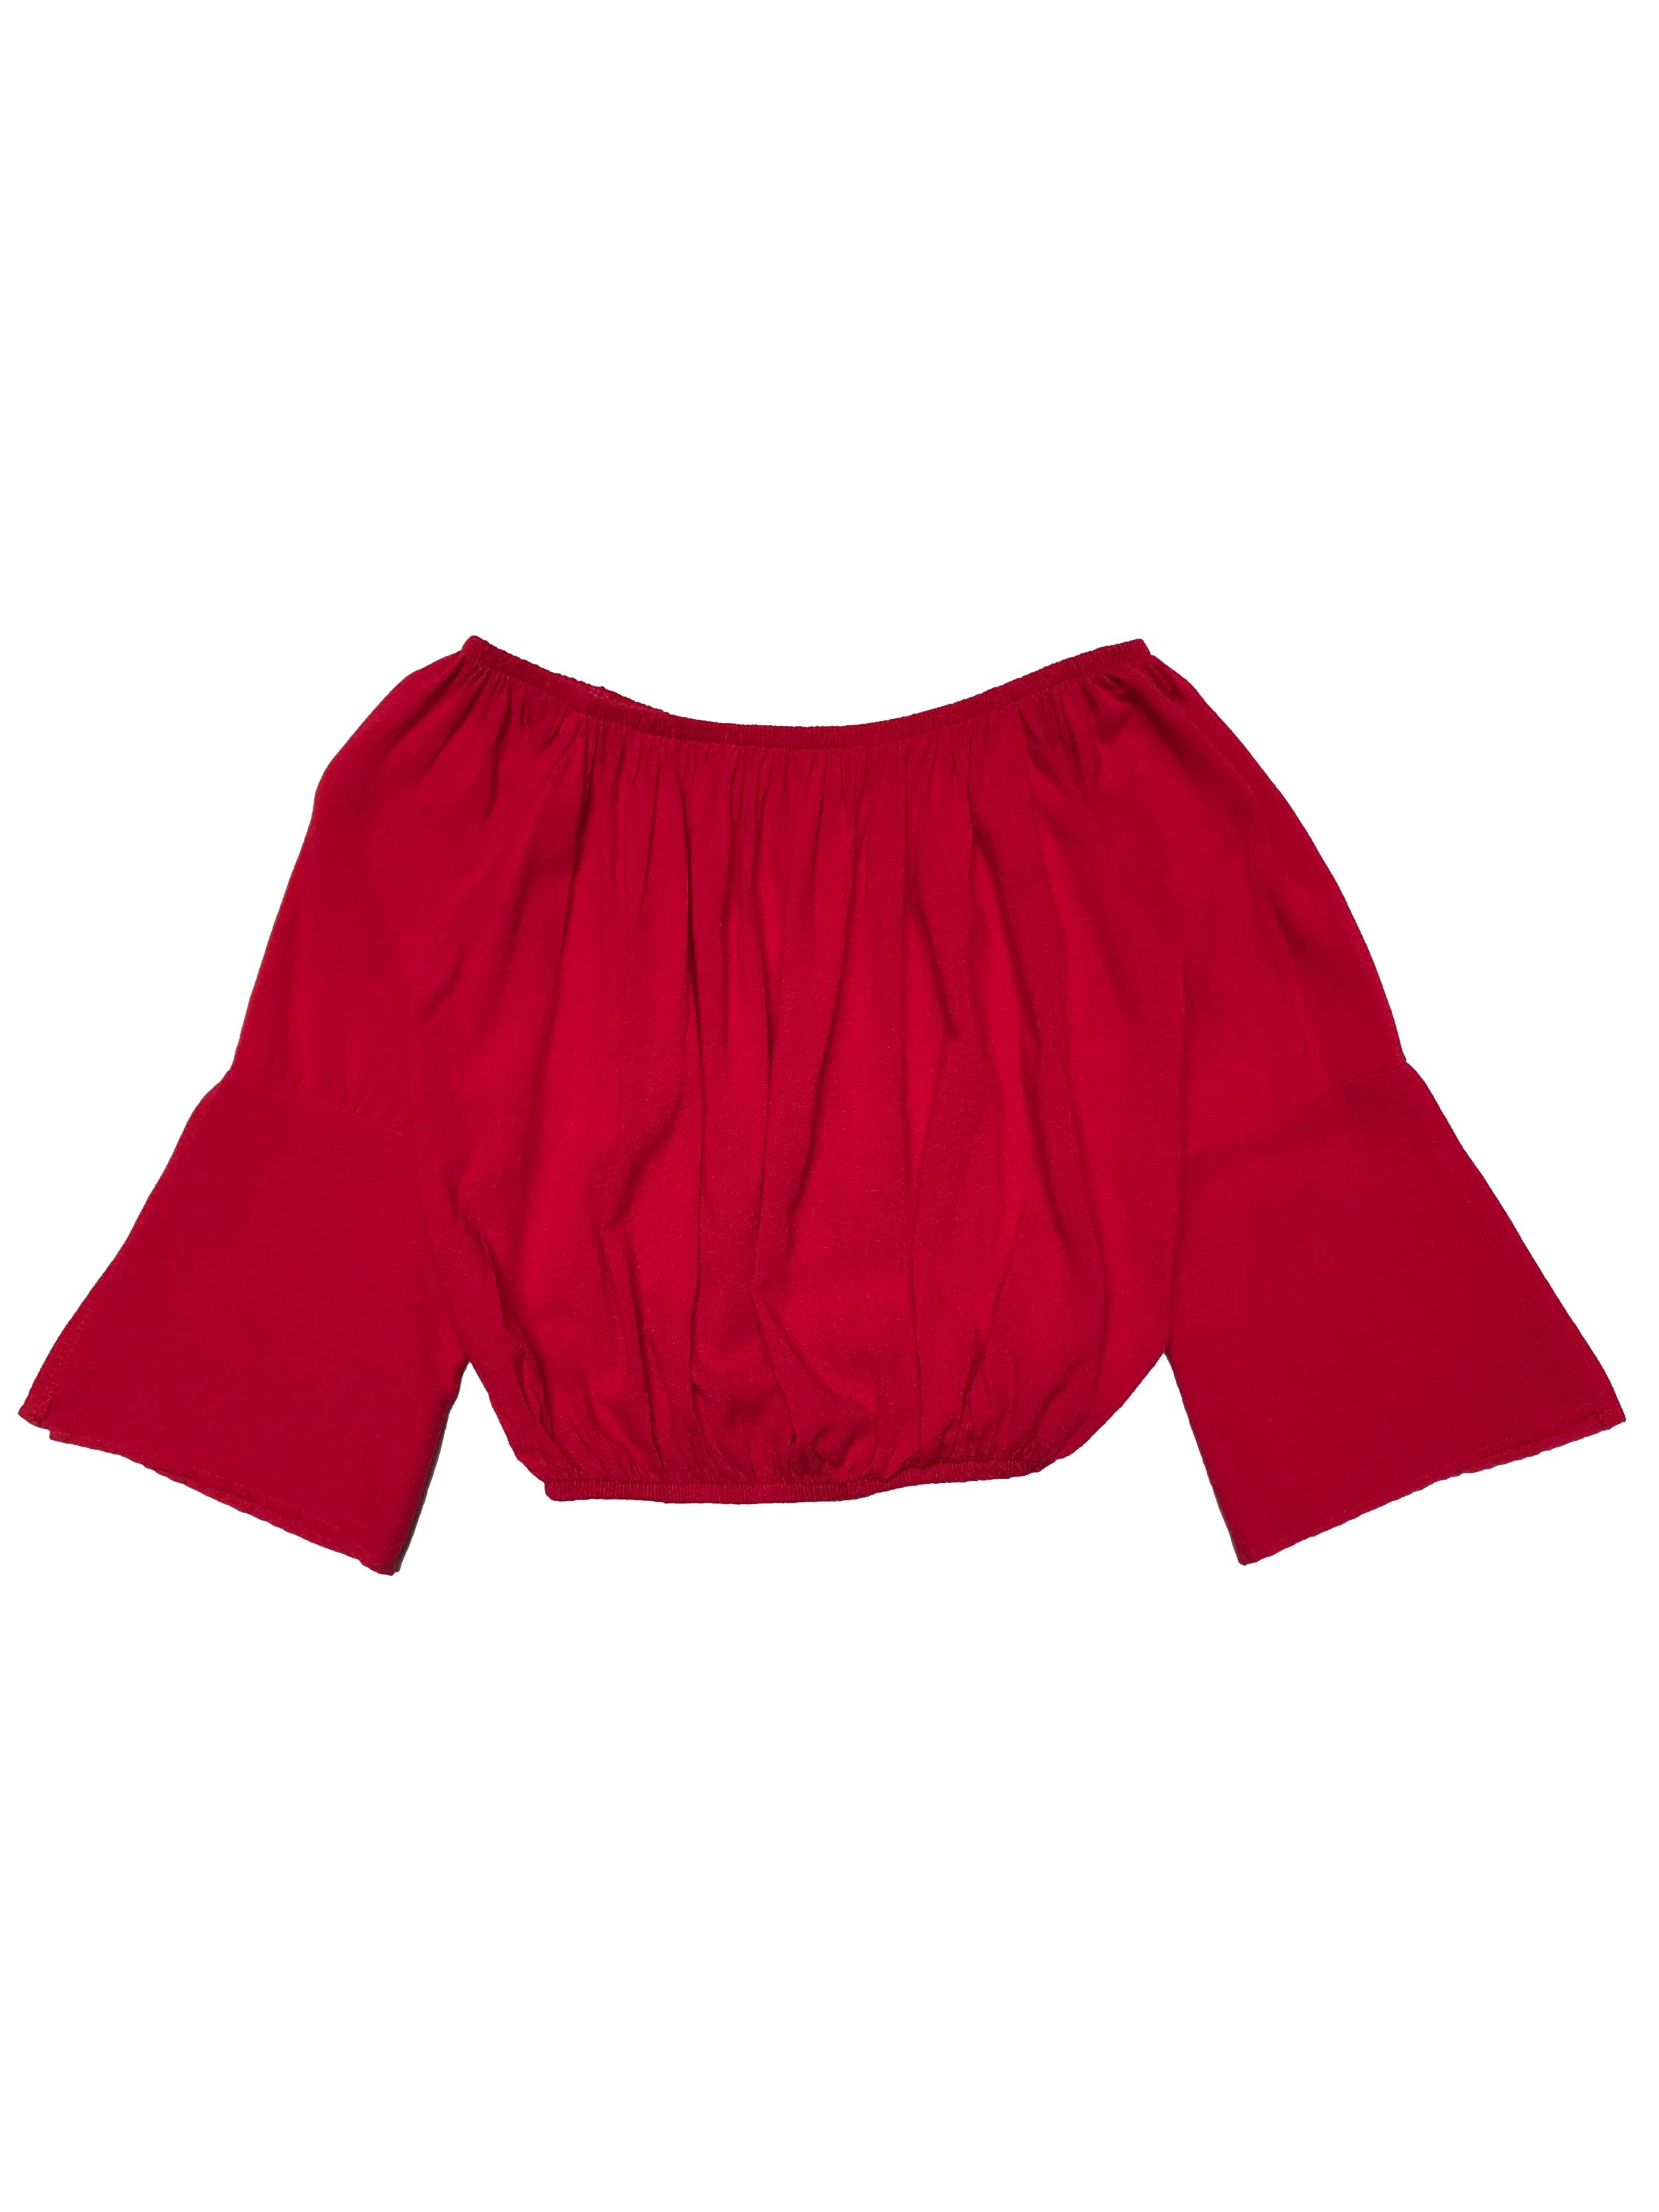 Blusa roja off shoulder con elastico en hombros y basta, mangas 3/4 con abertura. Largo 35cm. 